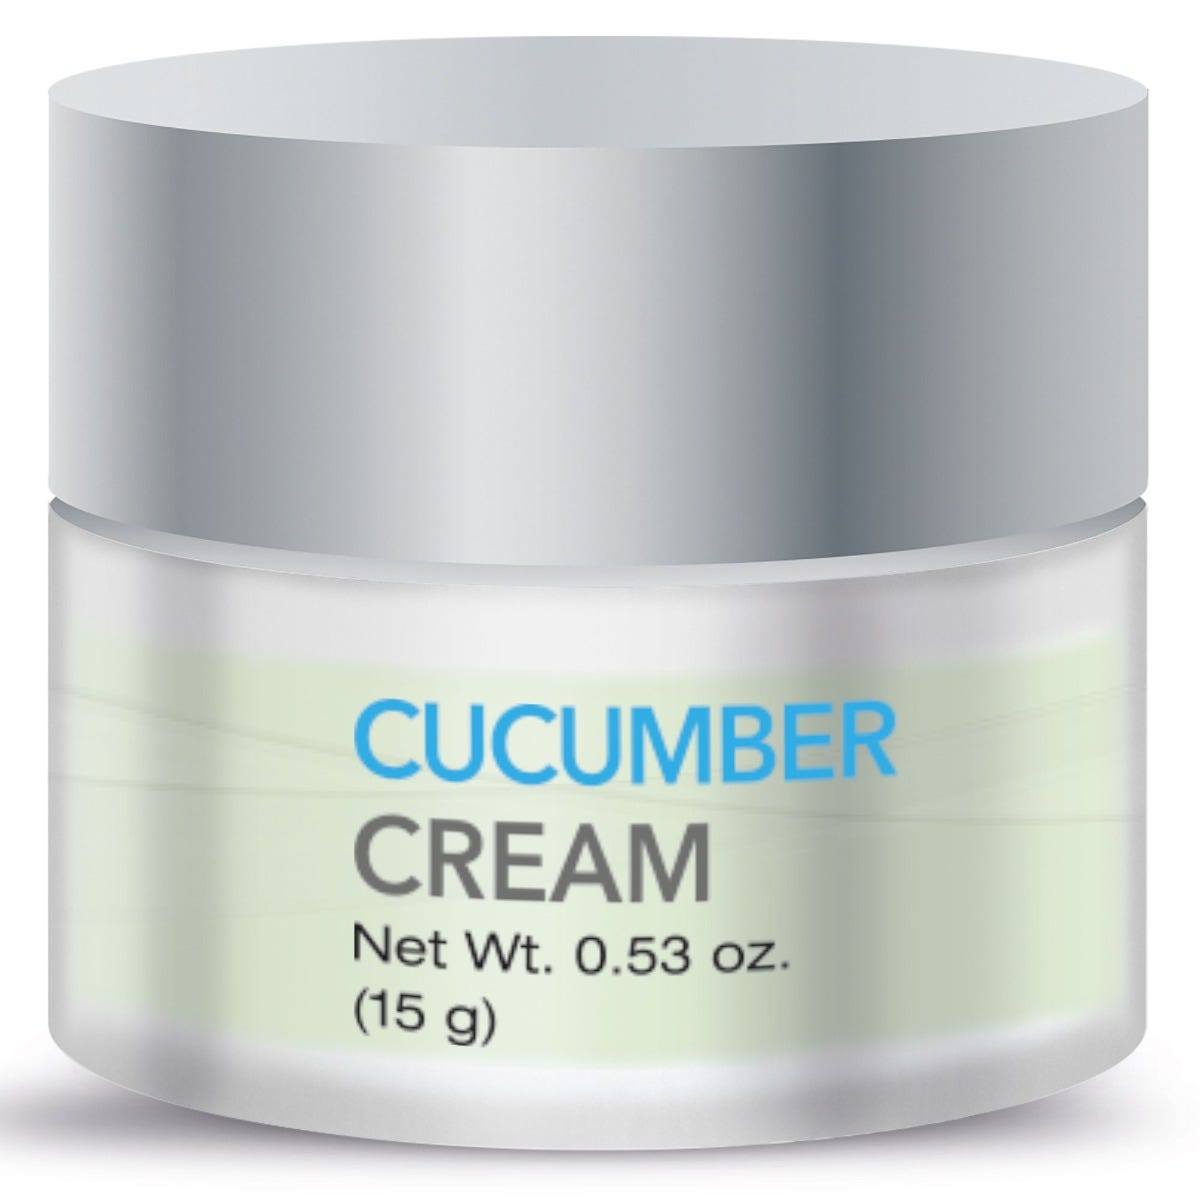 Bronson Vitamins eblume® Anti-aging Cucumber Eye Cream Non-GMO - 0.53 oz, Item #1313, Front Label